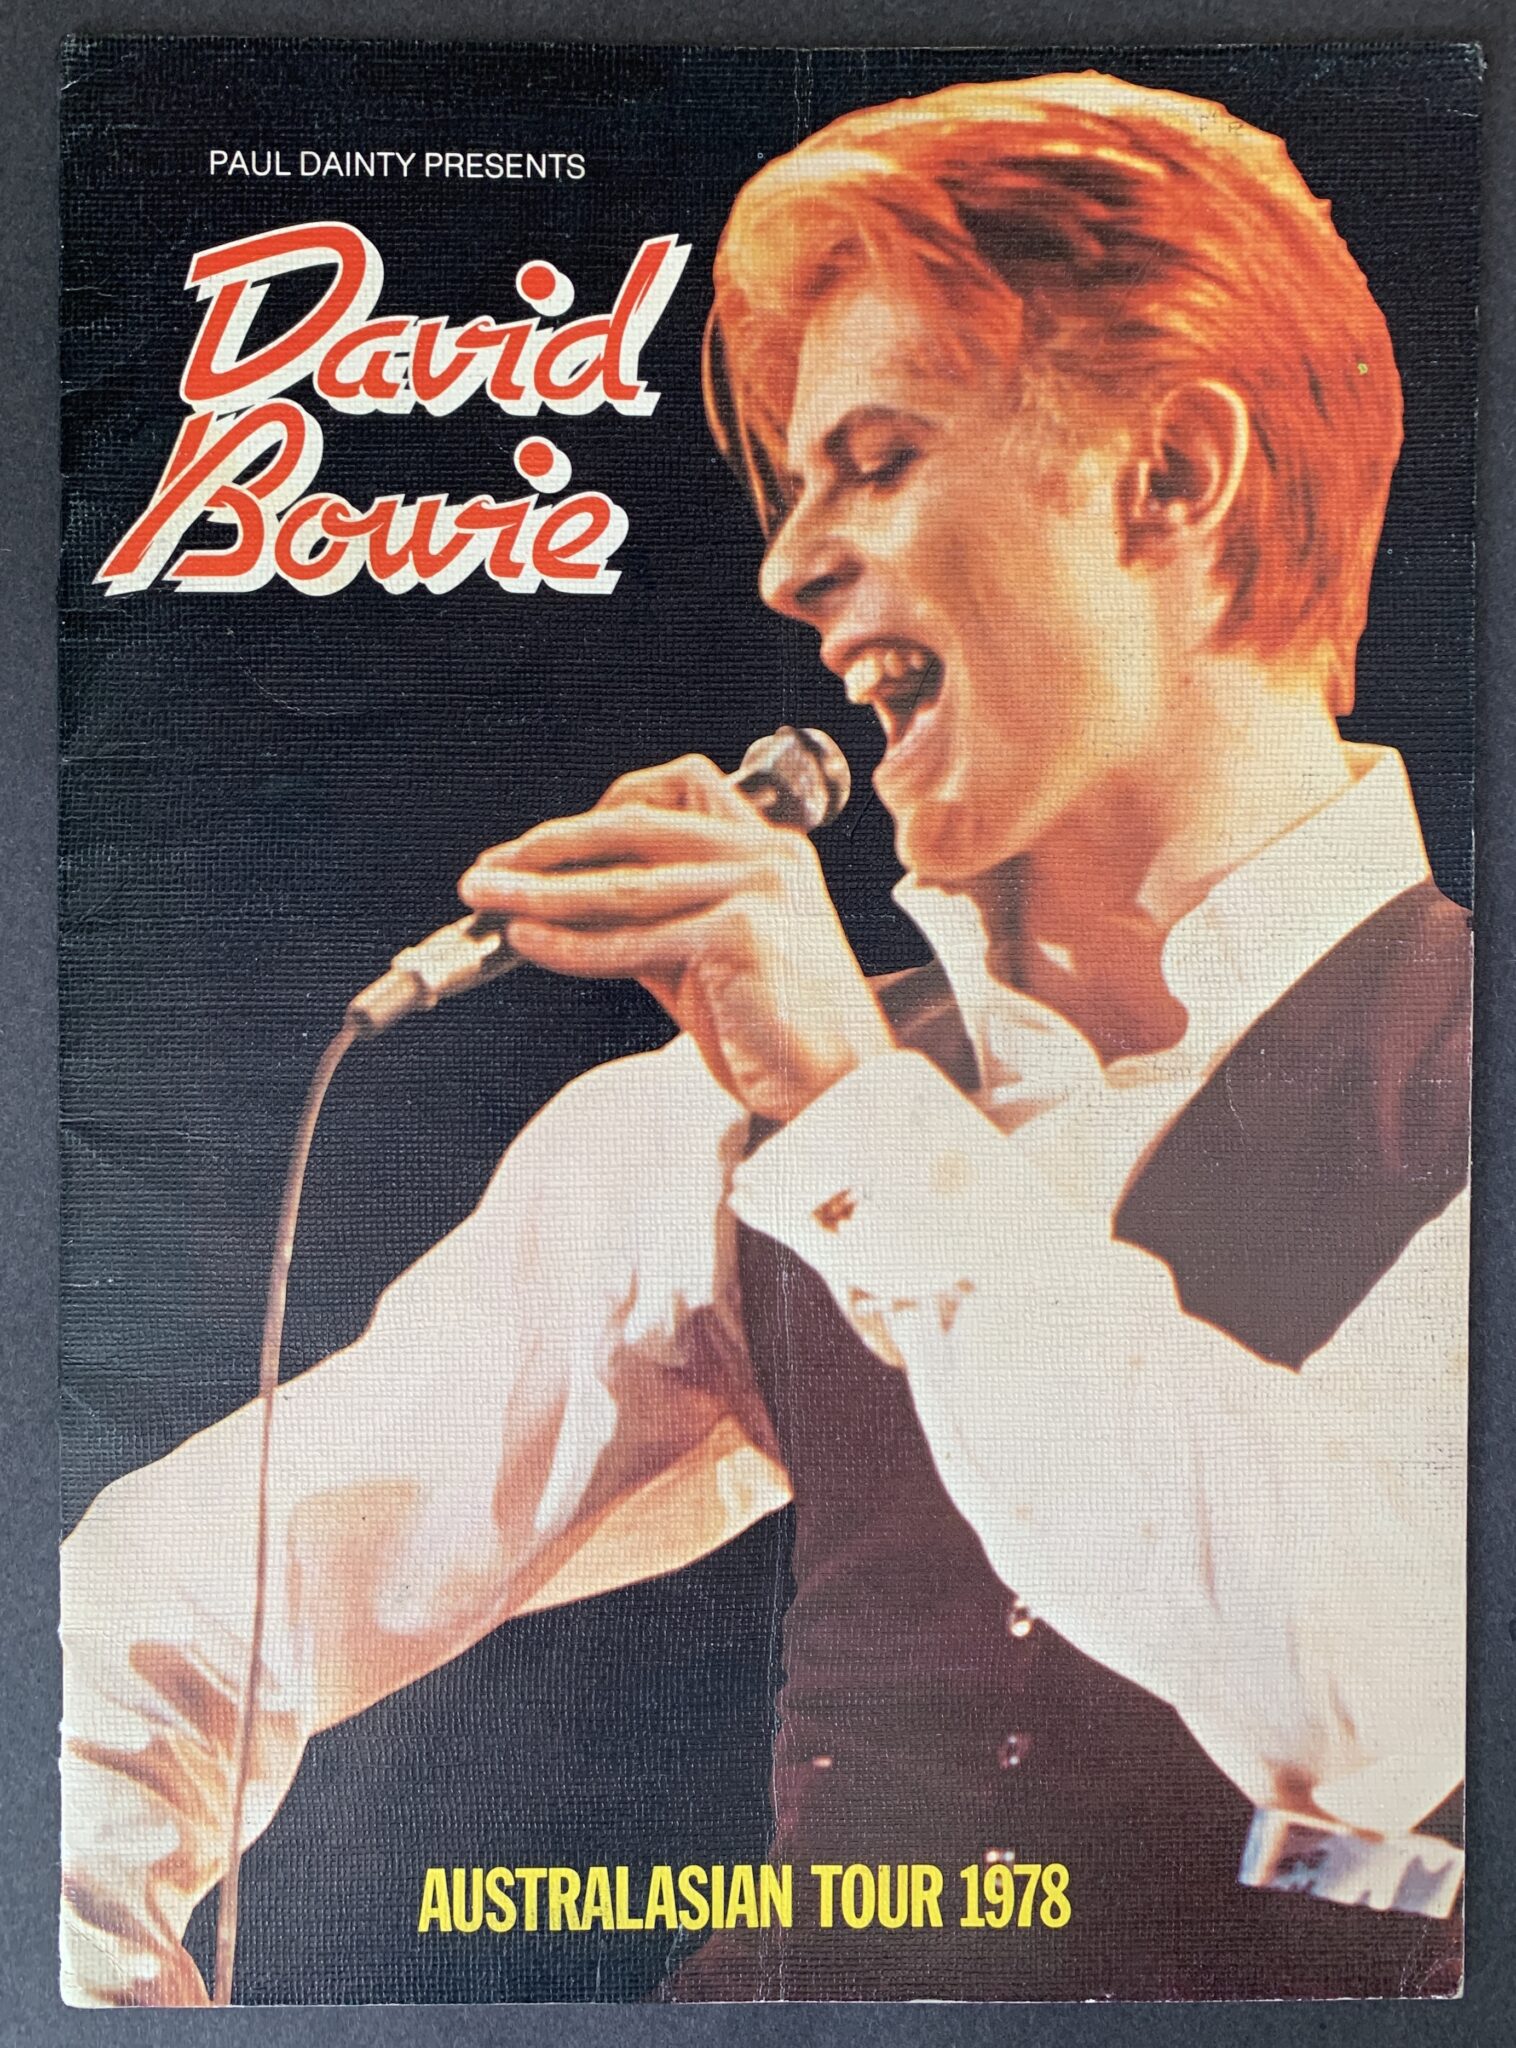 bowie 1978 tour dates